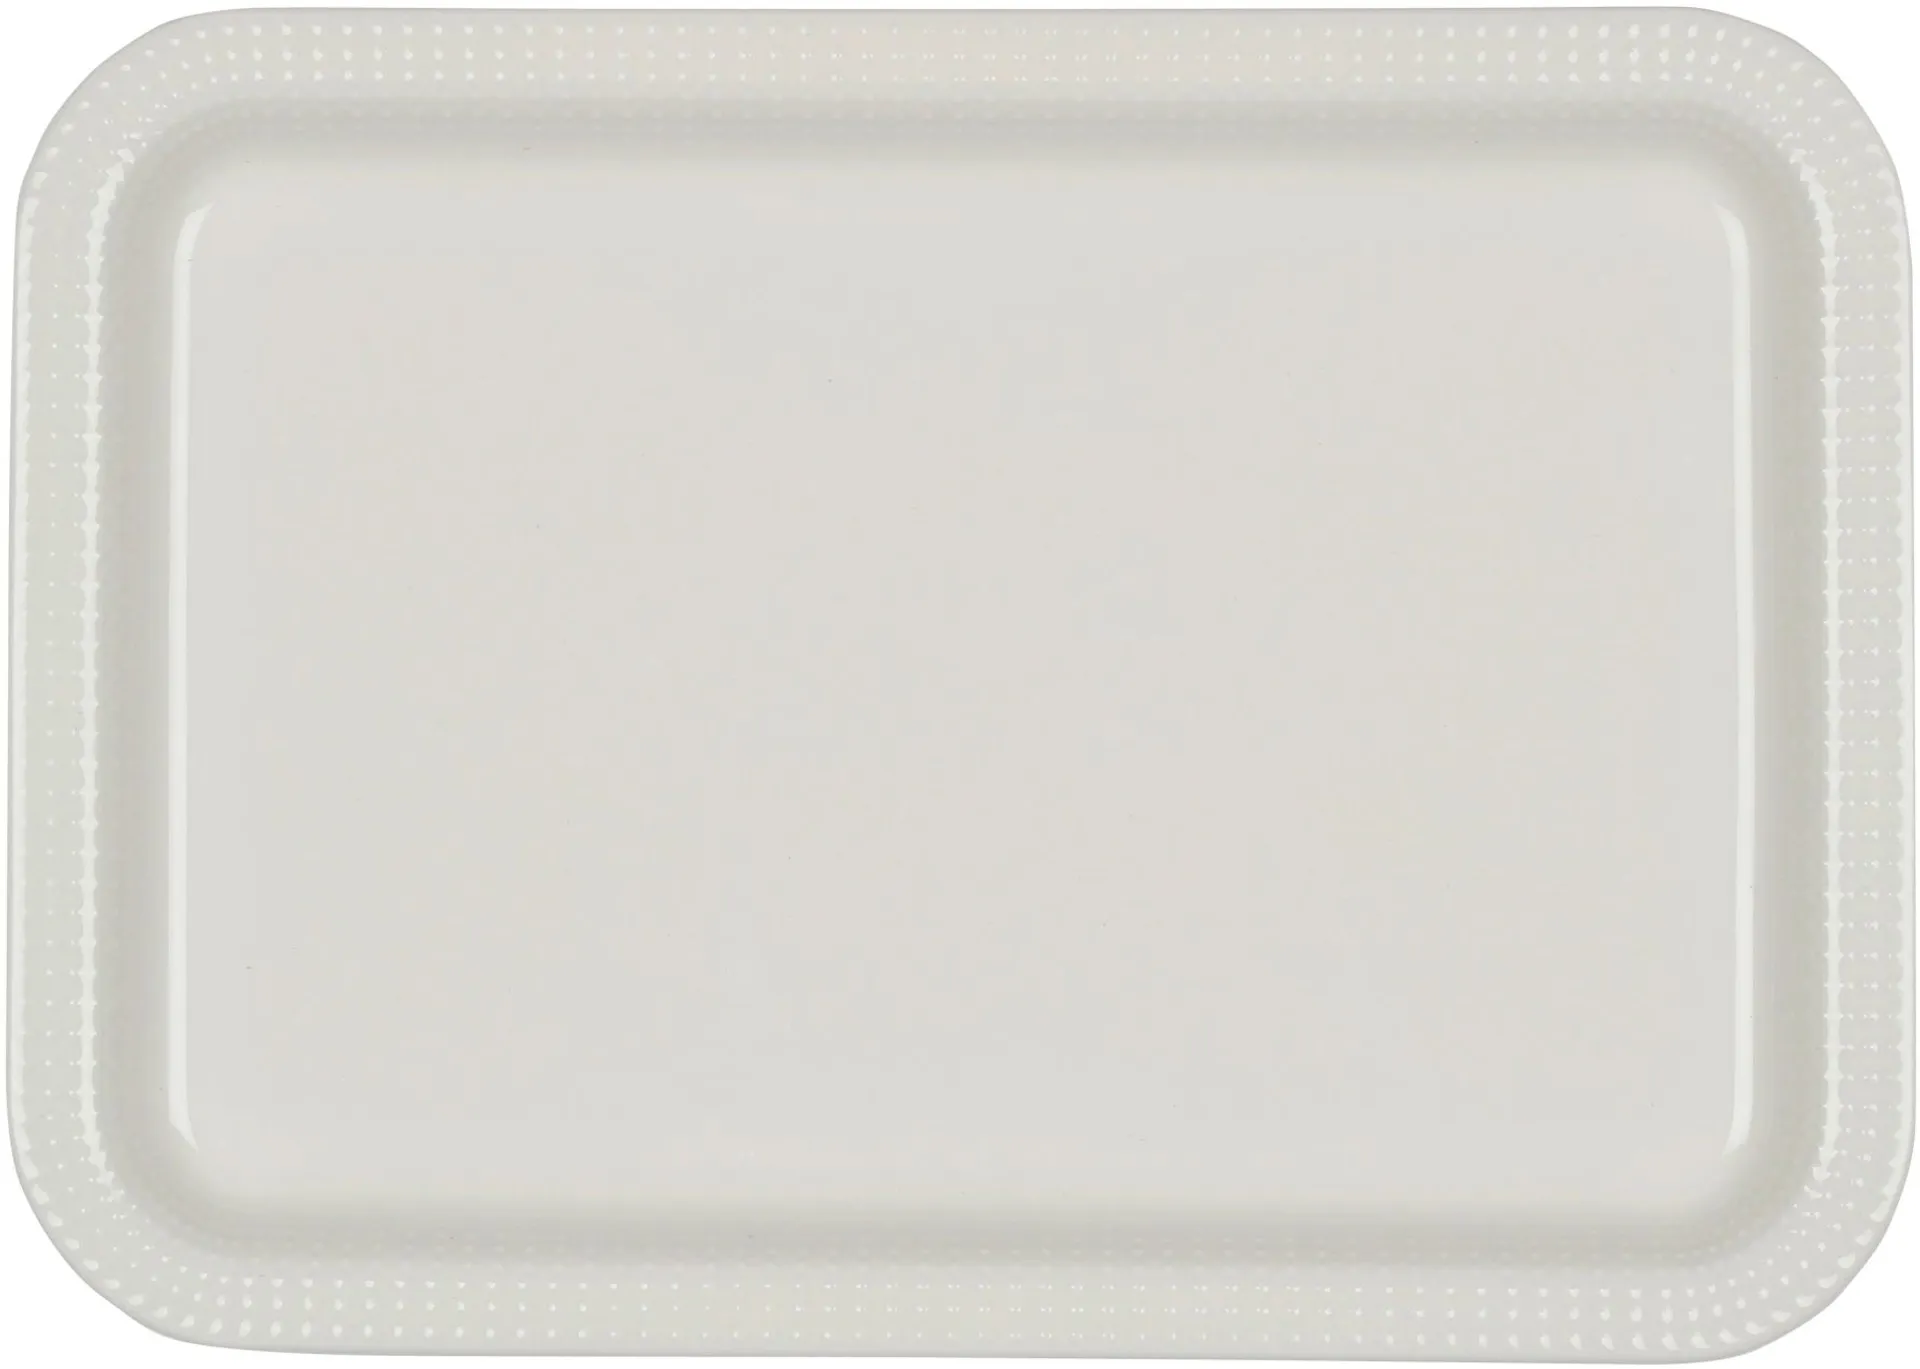 Kultakeramiikka Aito lautanen valkoinen 20x28cm